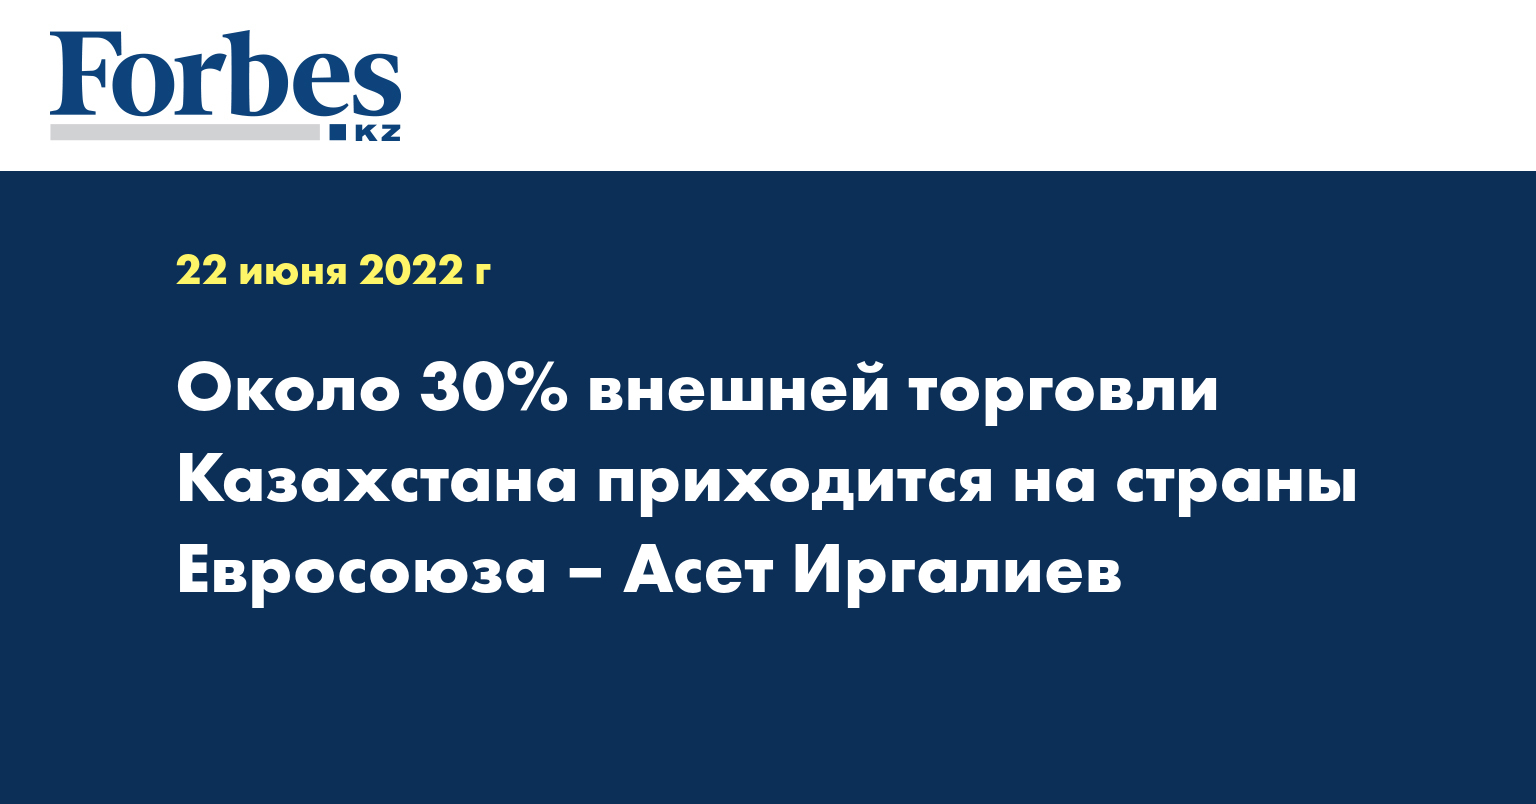 Около 30% внешней торговли Казахстана приходится на страны Евросоюза – Асет Иргалиев